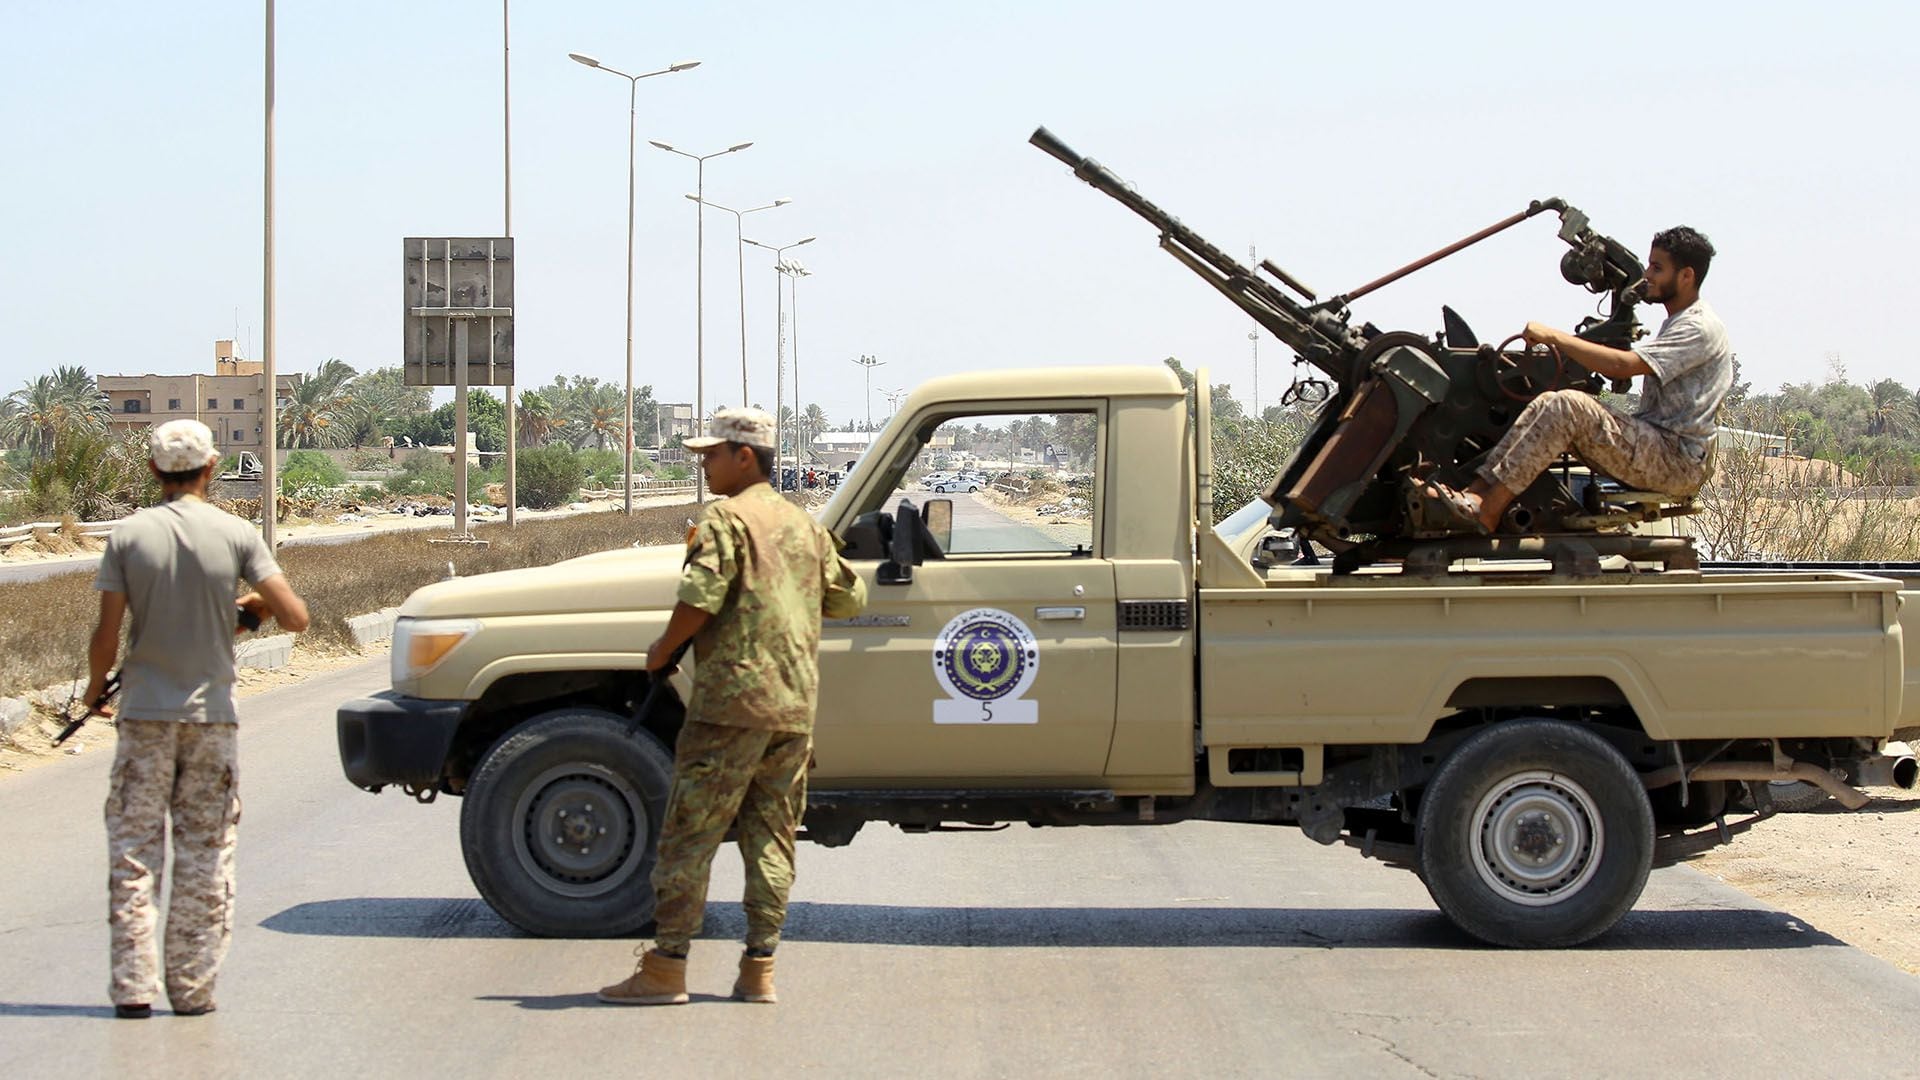 Un “technical”, un vehículo civil adaptado con armamento militar, en Libia (AFP)